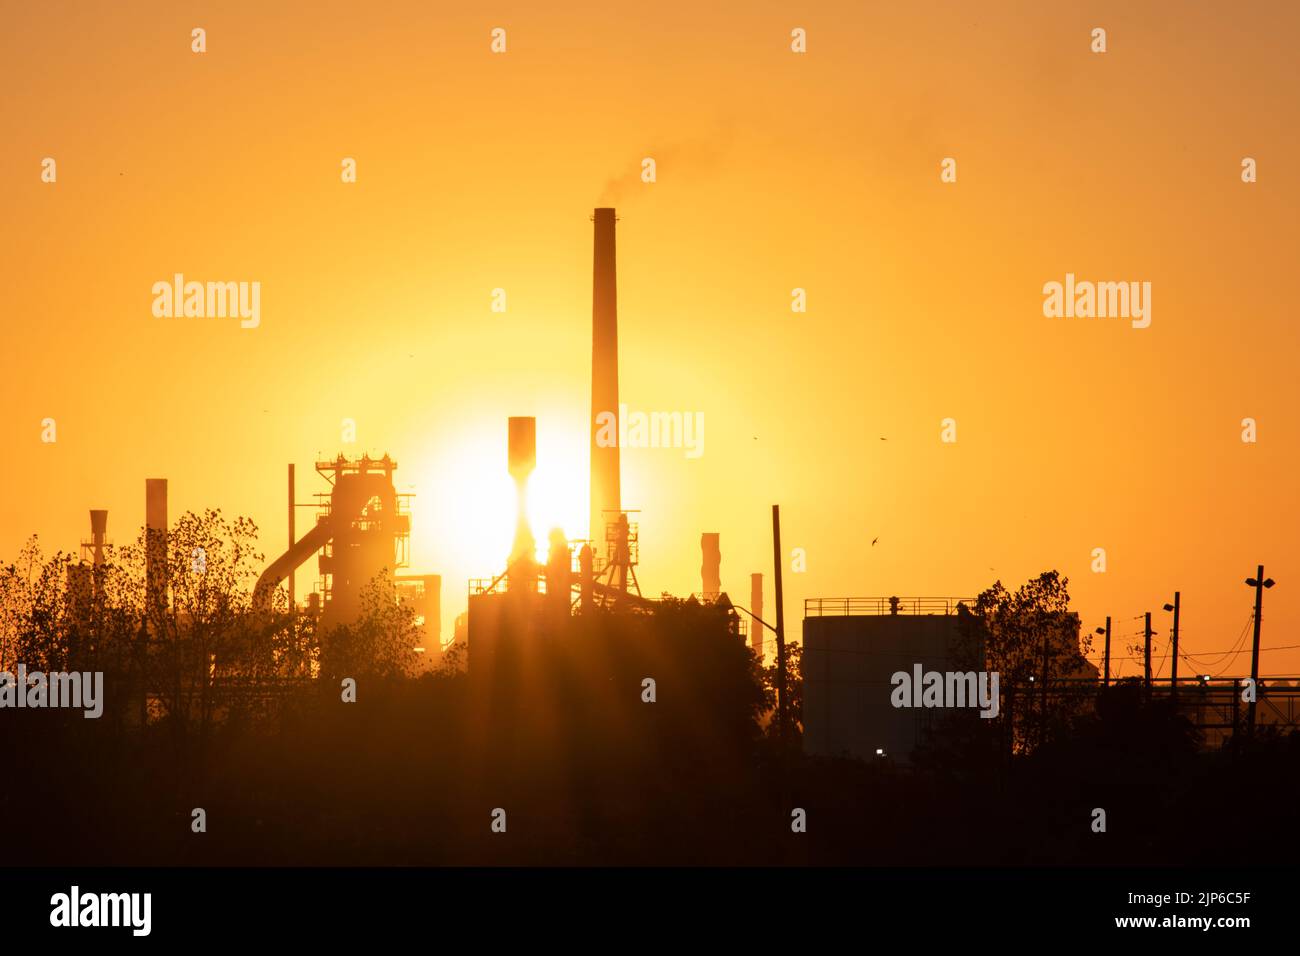 Le soleil du soir brille un fumoir industriel, grande usine au crépuscule. Banque D'Images